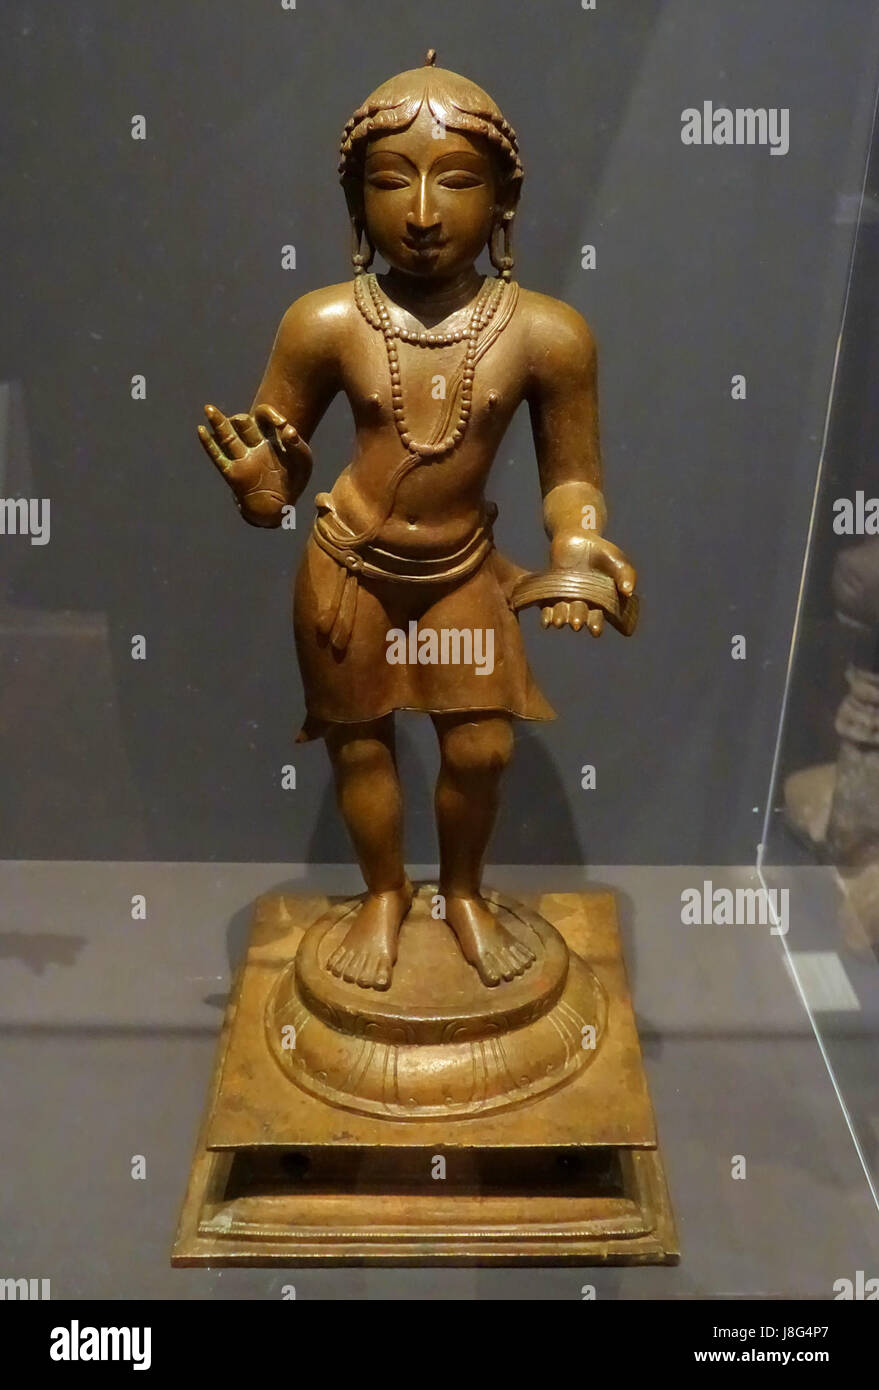 Manikkavacakar, Indien, Tamil Nadu, Chola Periode, 11. 12. Jhd, Bronze-Linden-Museum Stuttgart, Deutschland-DSC03795 Stockfoto